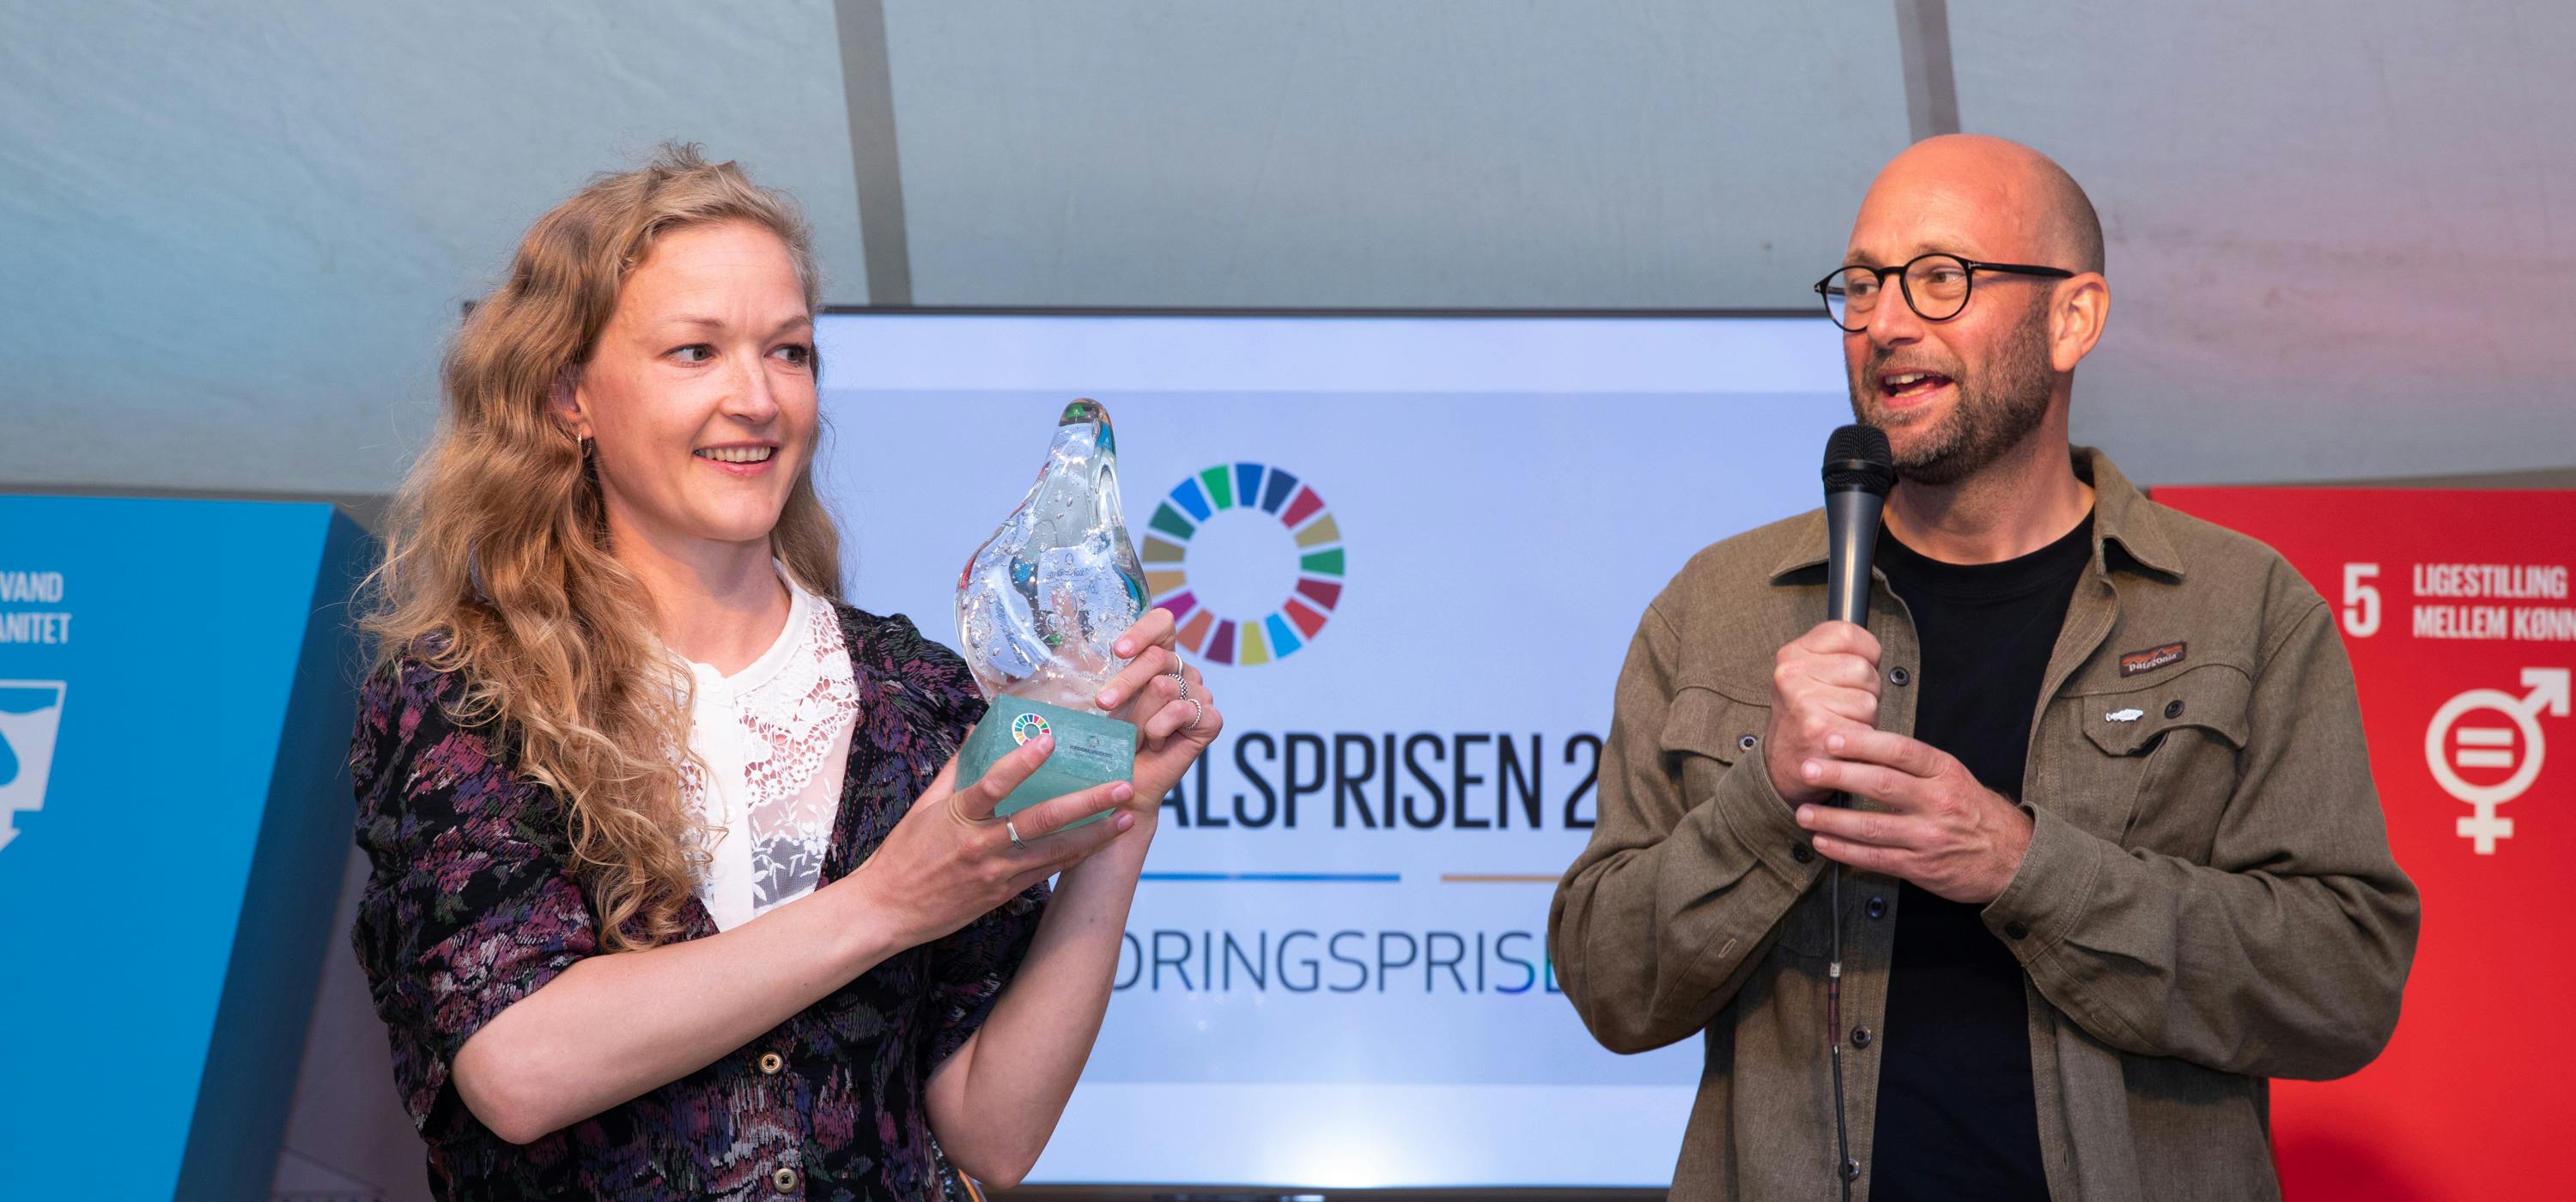 Vinderen af Forandringsprisen er Charlotte Hedevang Nielsen og fødevarerministeren. Foto: Jacob Crawfurd